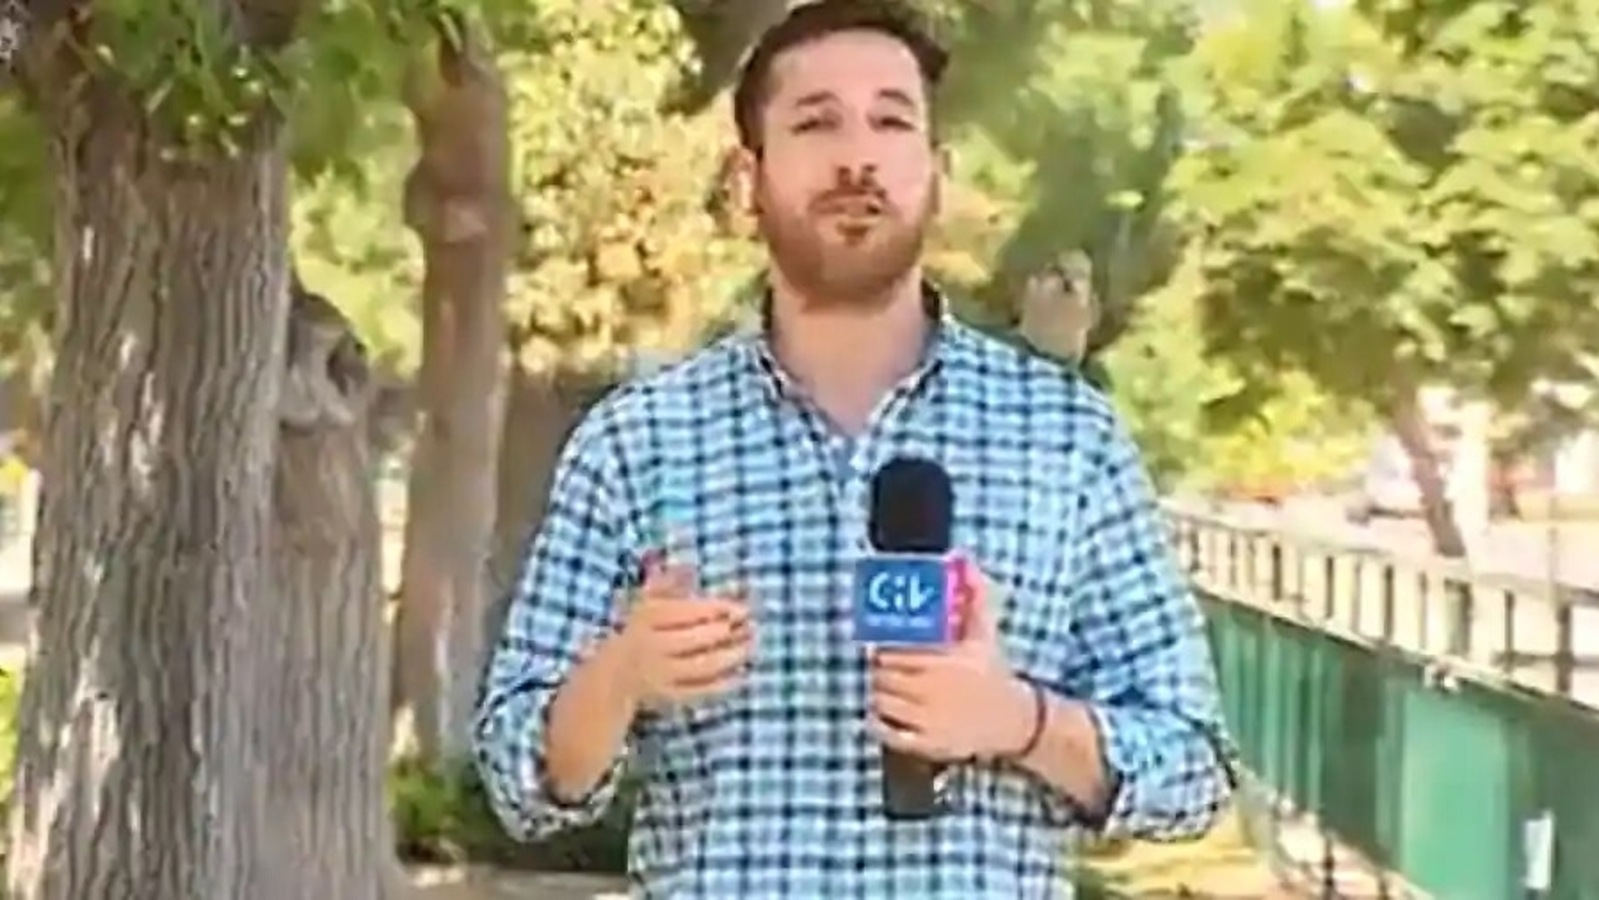 Ver: Un loro enfadado le roba los auriculares a un periodista chileno durante una transmisión en vivo.  Reaccionó |  Noticias del mundo